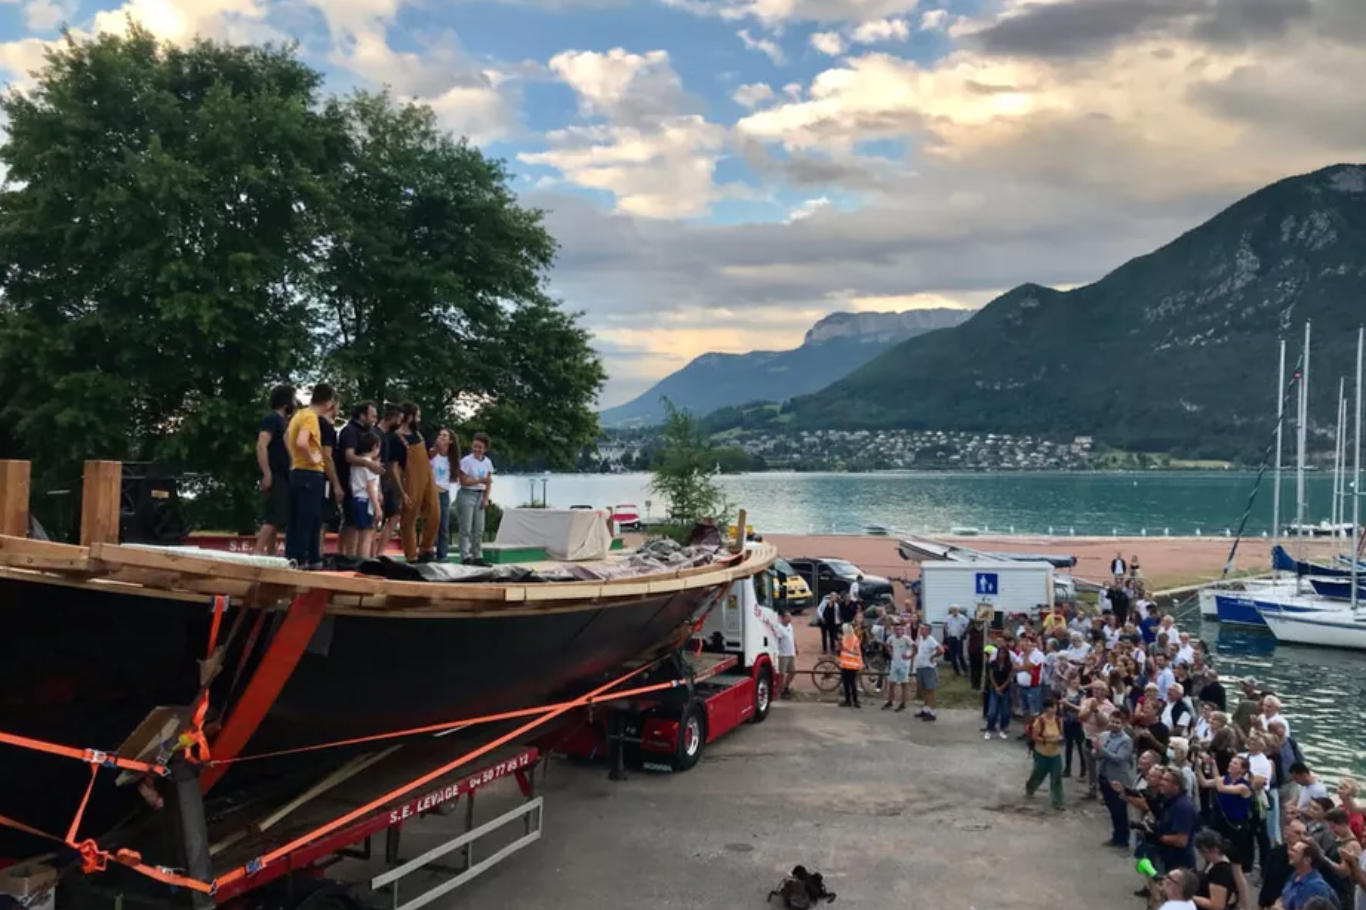 28/06/2021 - Après deux ans de chantier, l'Espérance III a été mis à l'eau sur le lac d'Annecy - Actualités